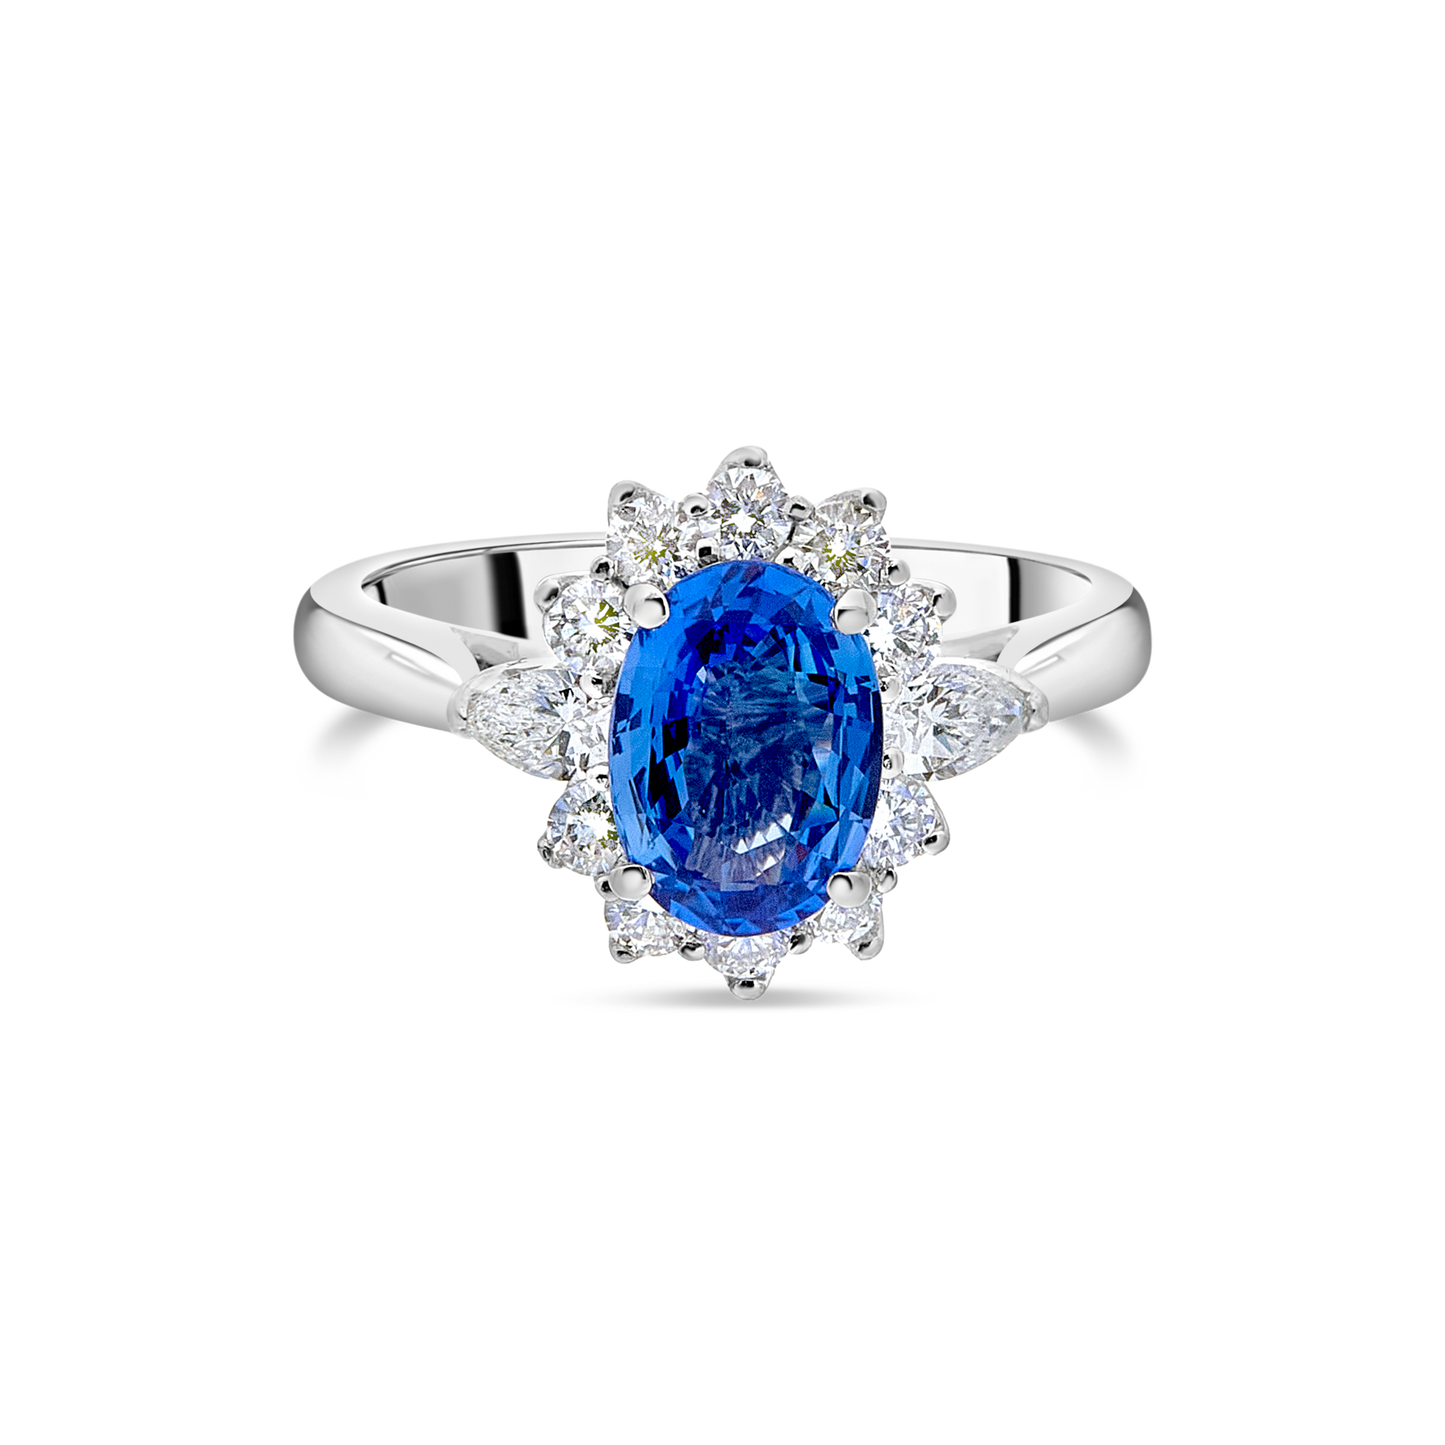 Kate Petal - Sapphire and Diamond Ring, Platinum